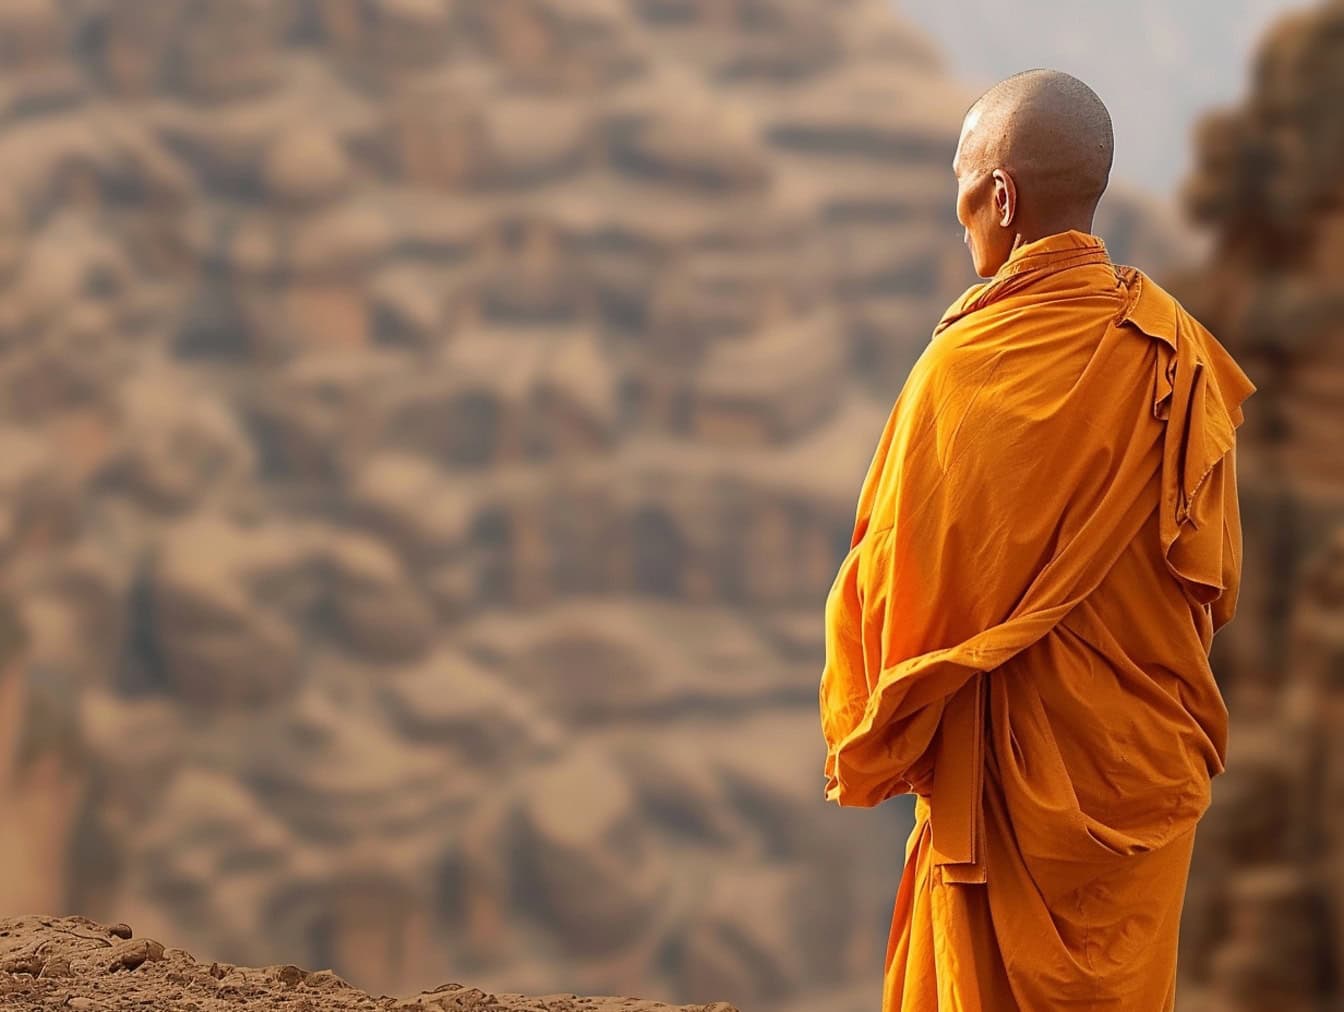 Buddyjski mnich z ogoloną głową stoi odwrócony plecami na pustyni ubrany w pomarańczową szatę